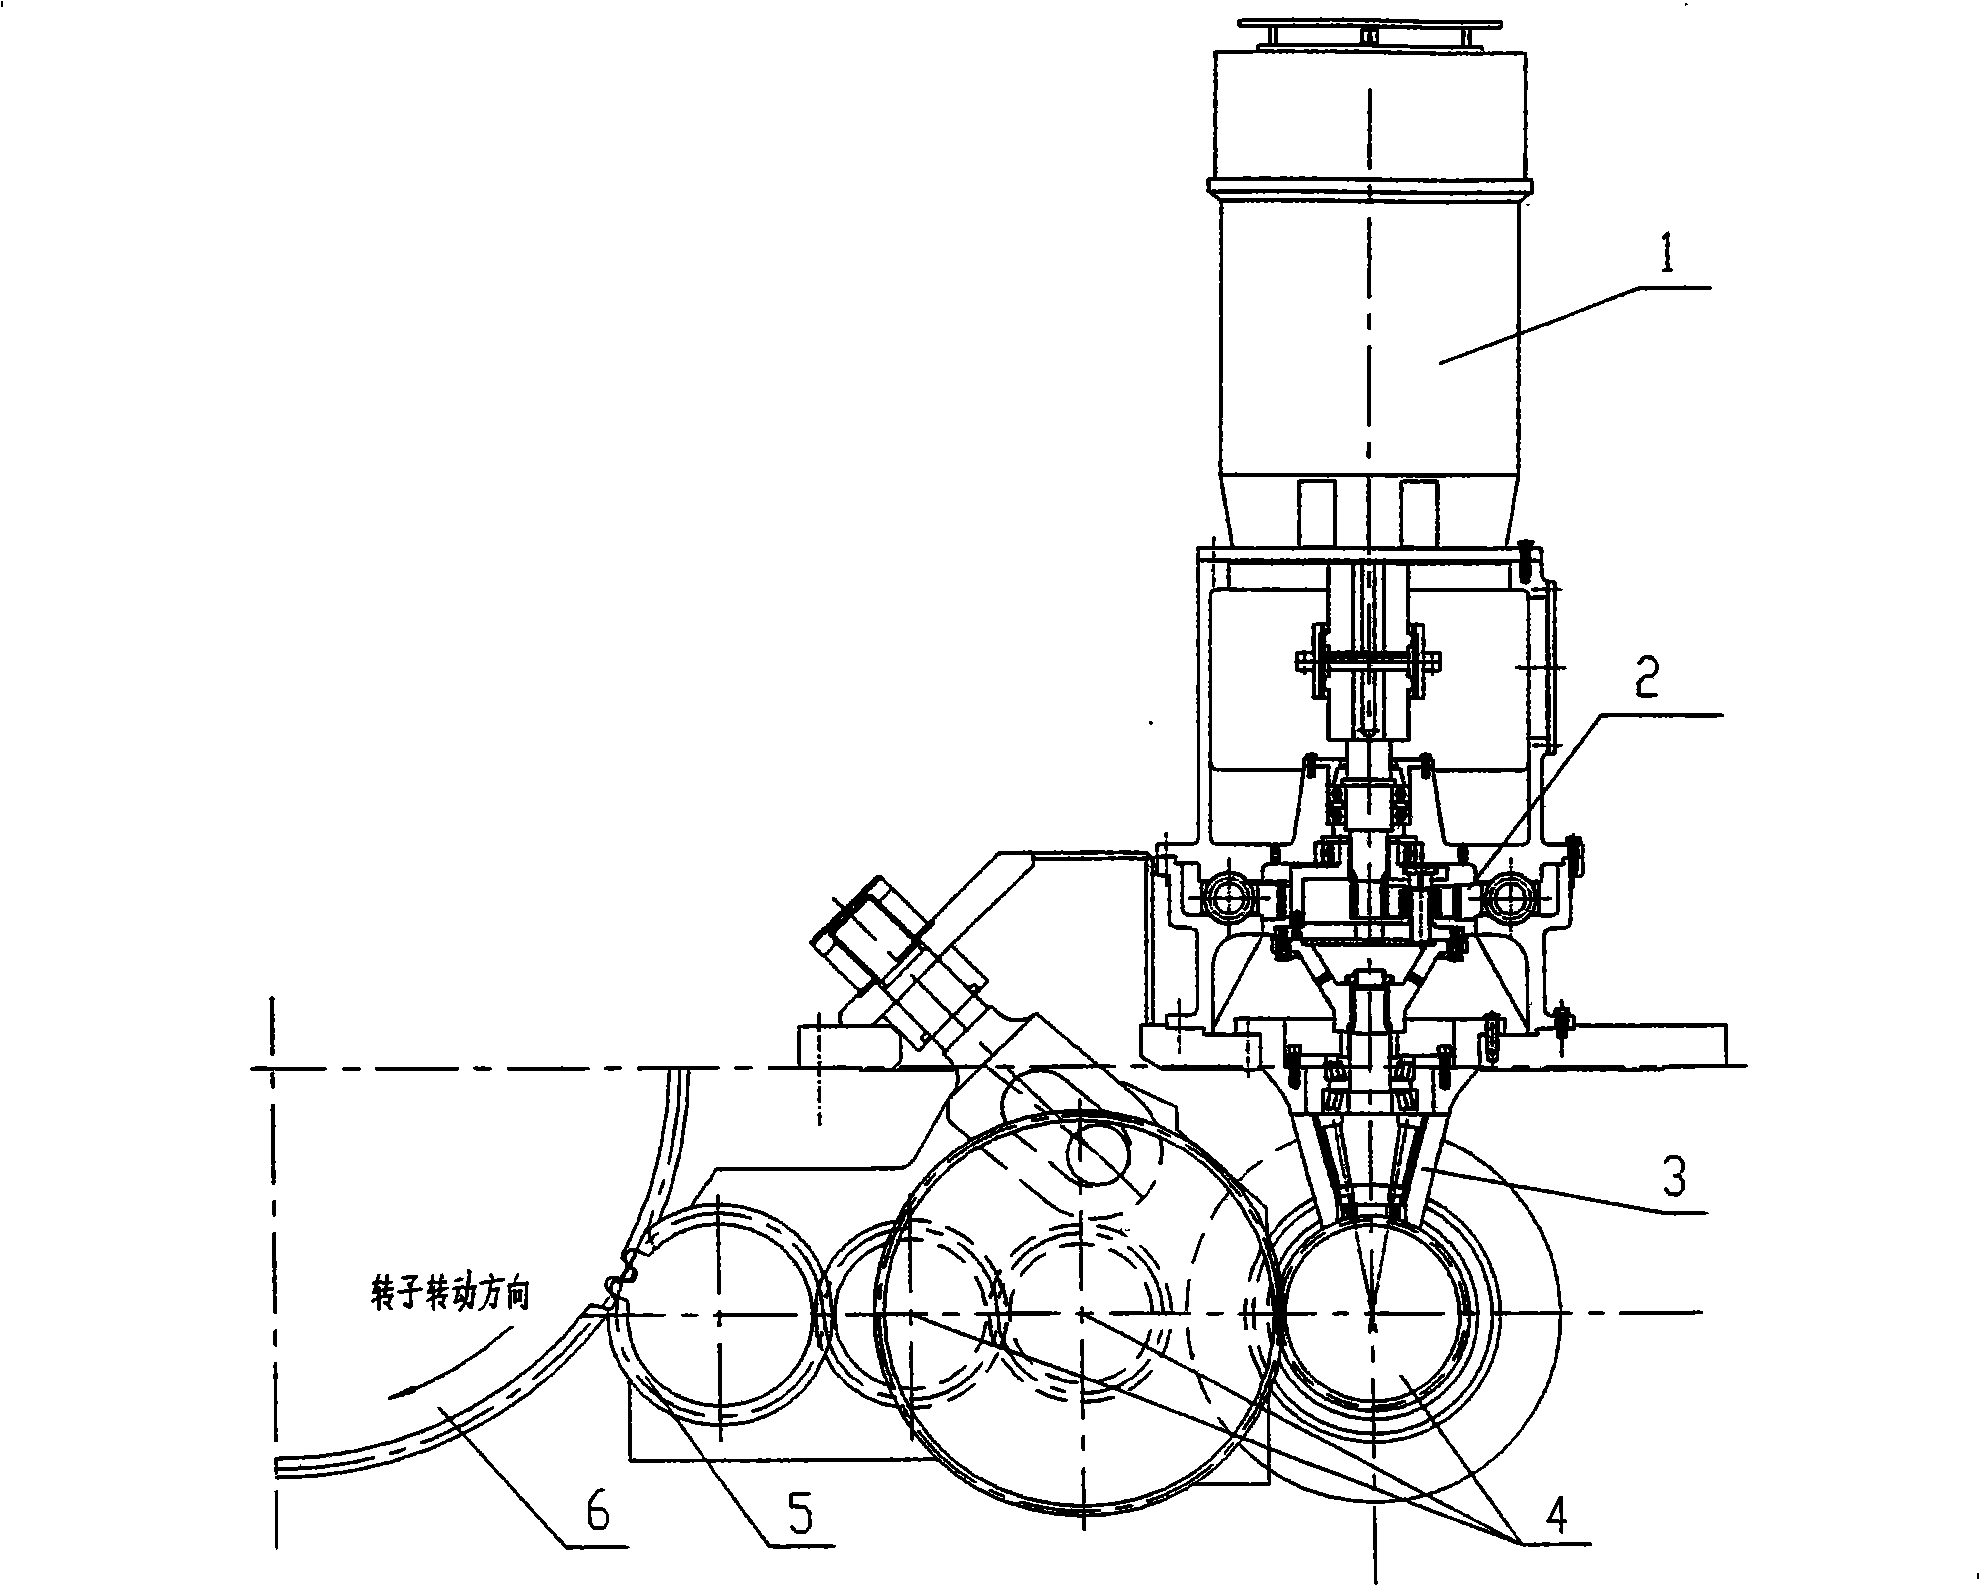 Rolling gear of turbine